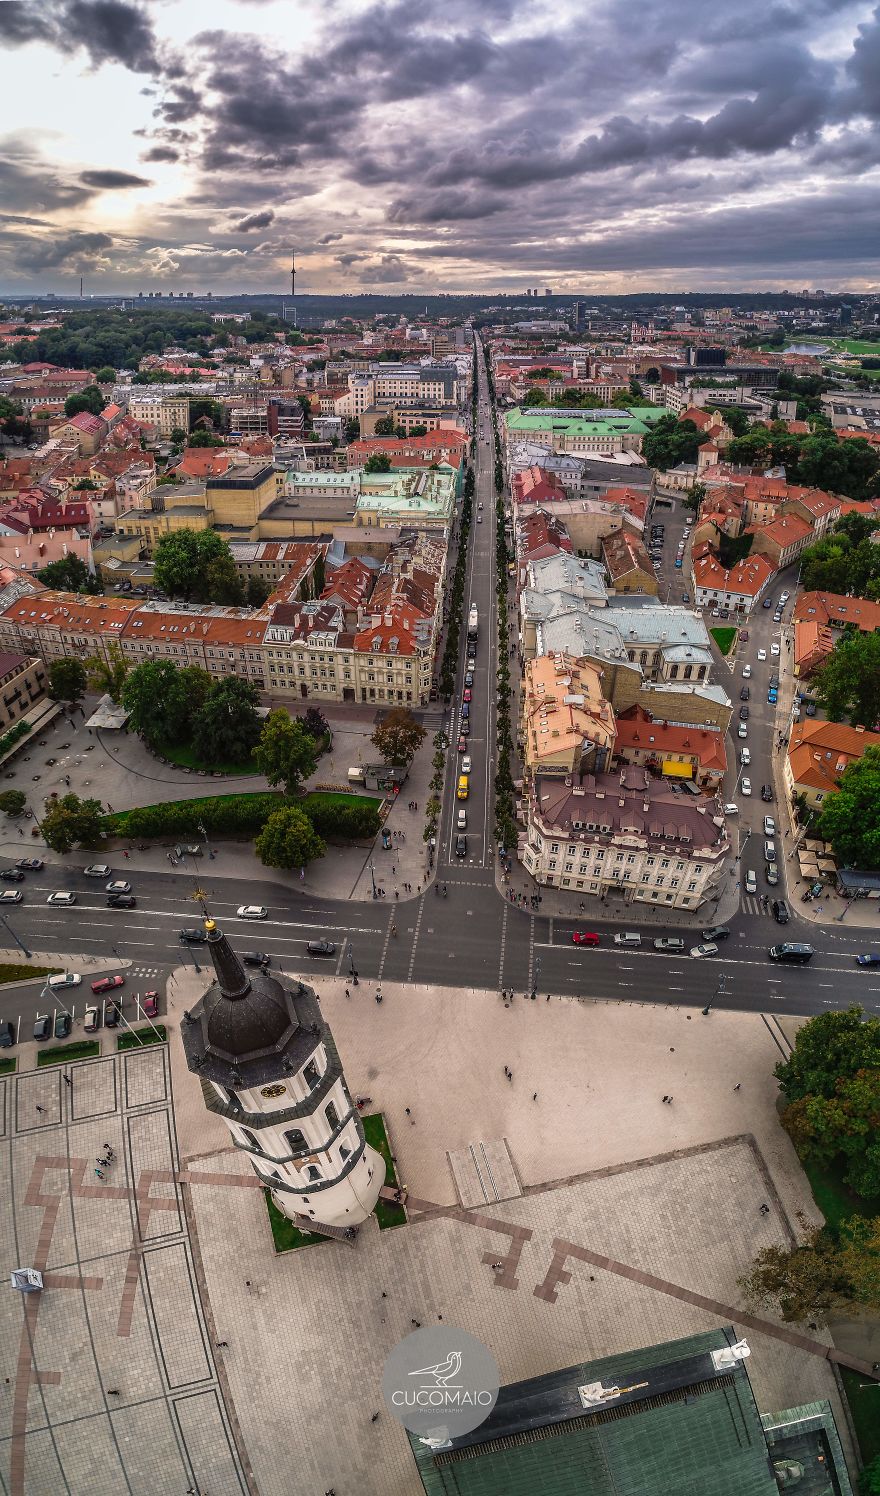 Литва столица какой страны. Вильнюс столица. Исторический центр Вильнюса. Литва Vilnius. Вильнюс центр города.